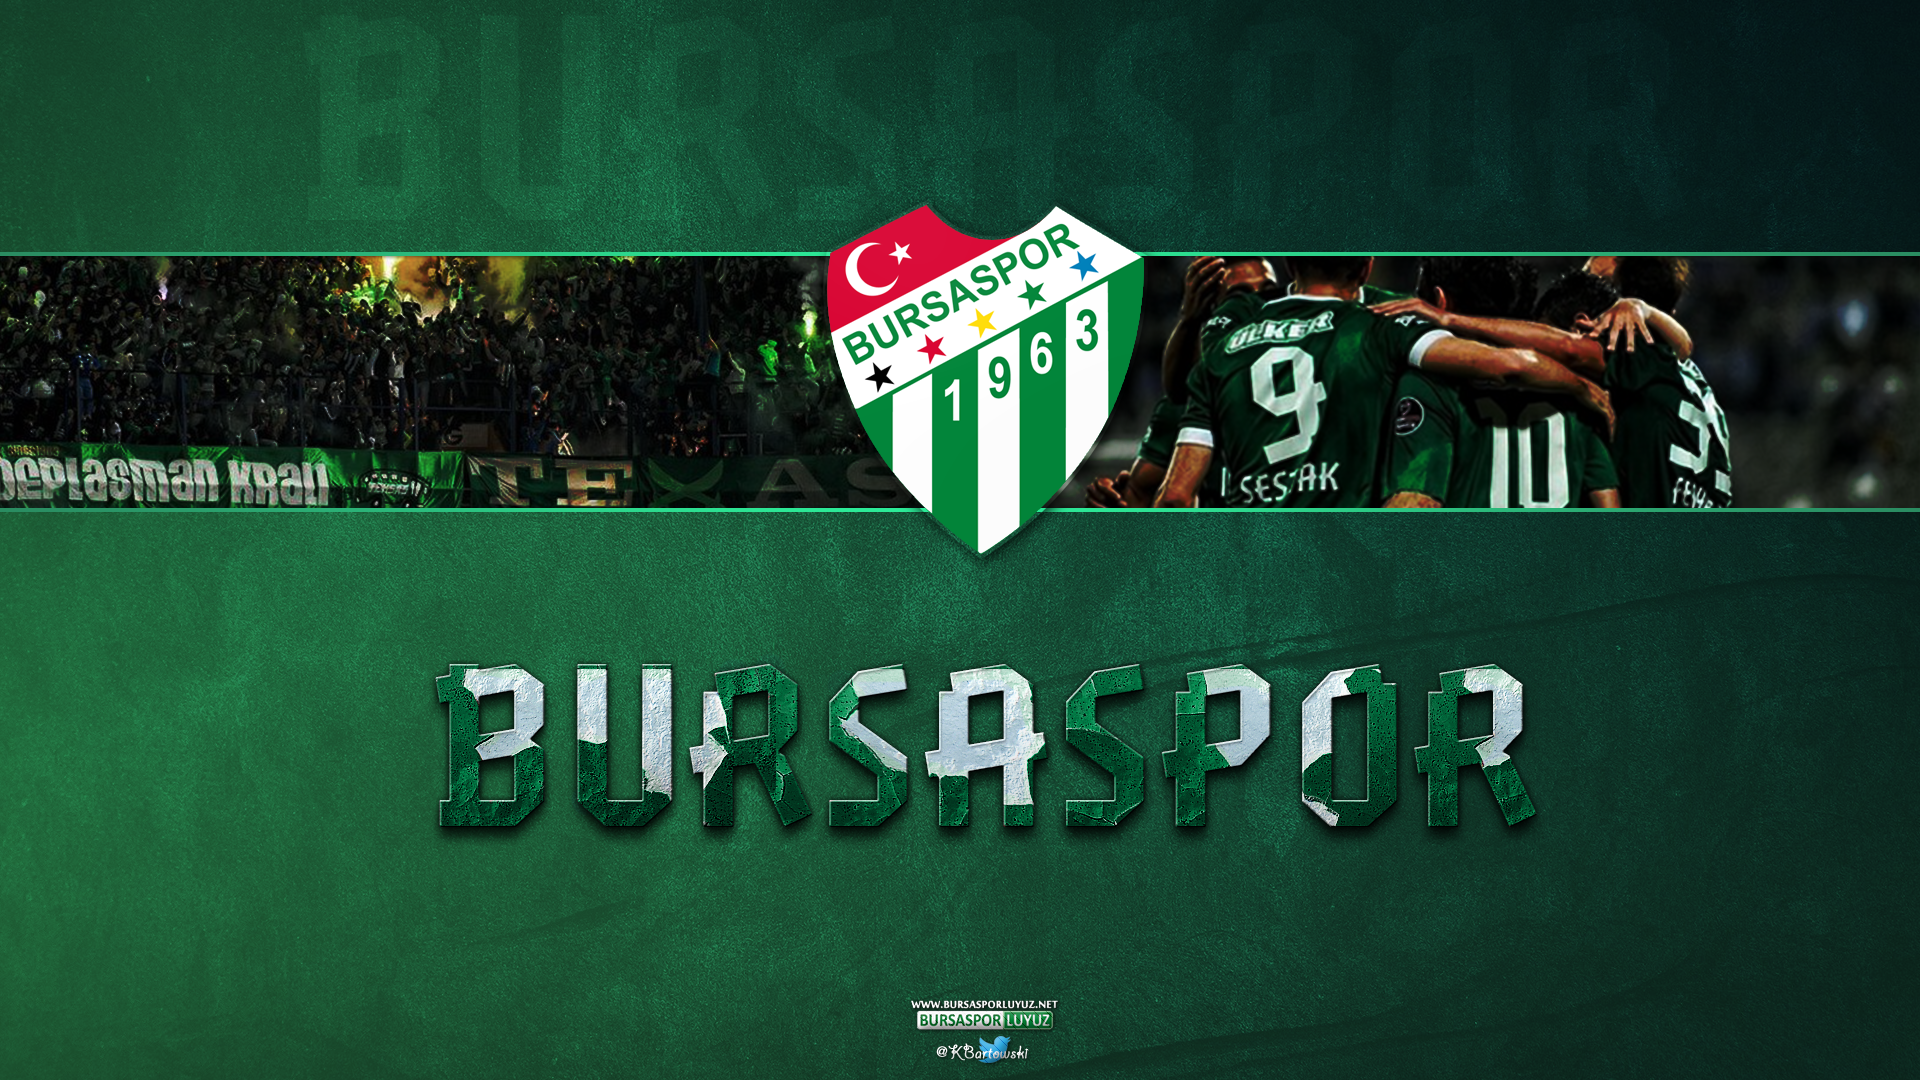 Bursaspor Wallpaper. Bursaspor Wallpaper